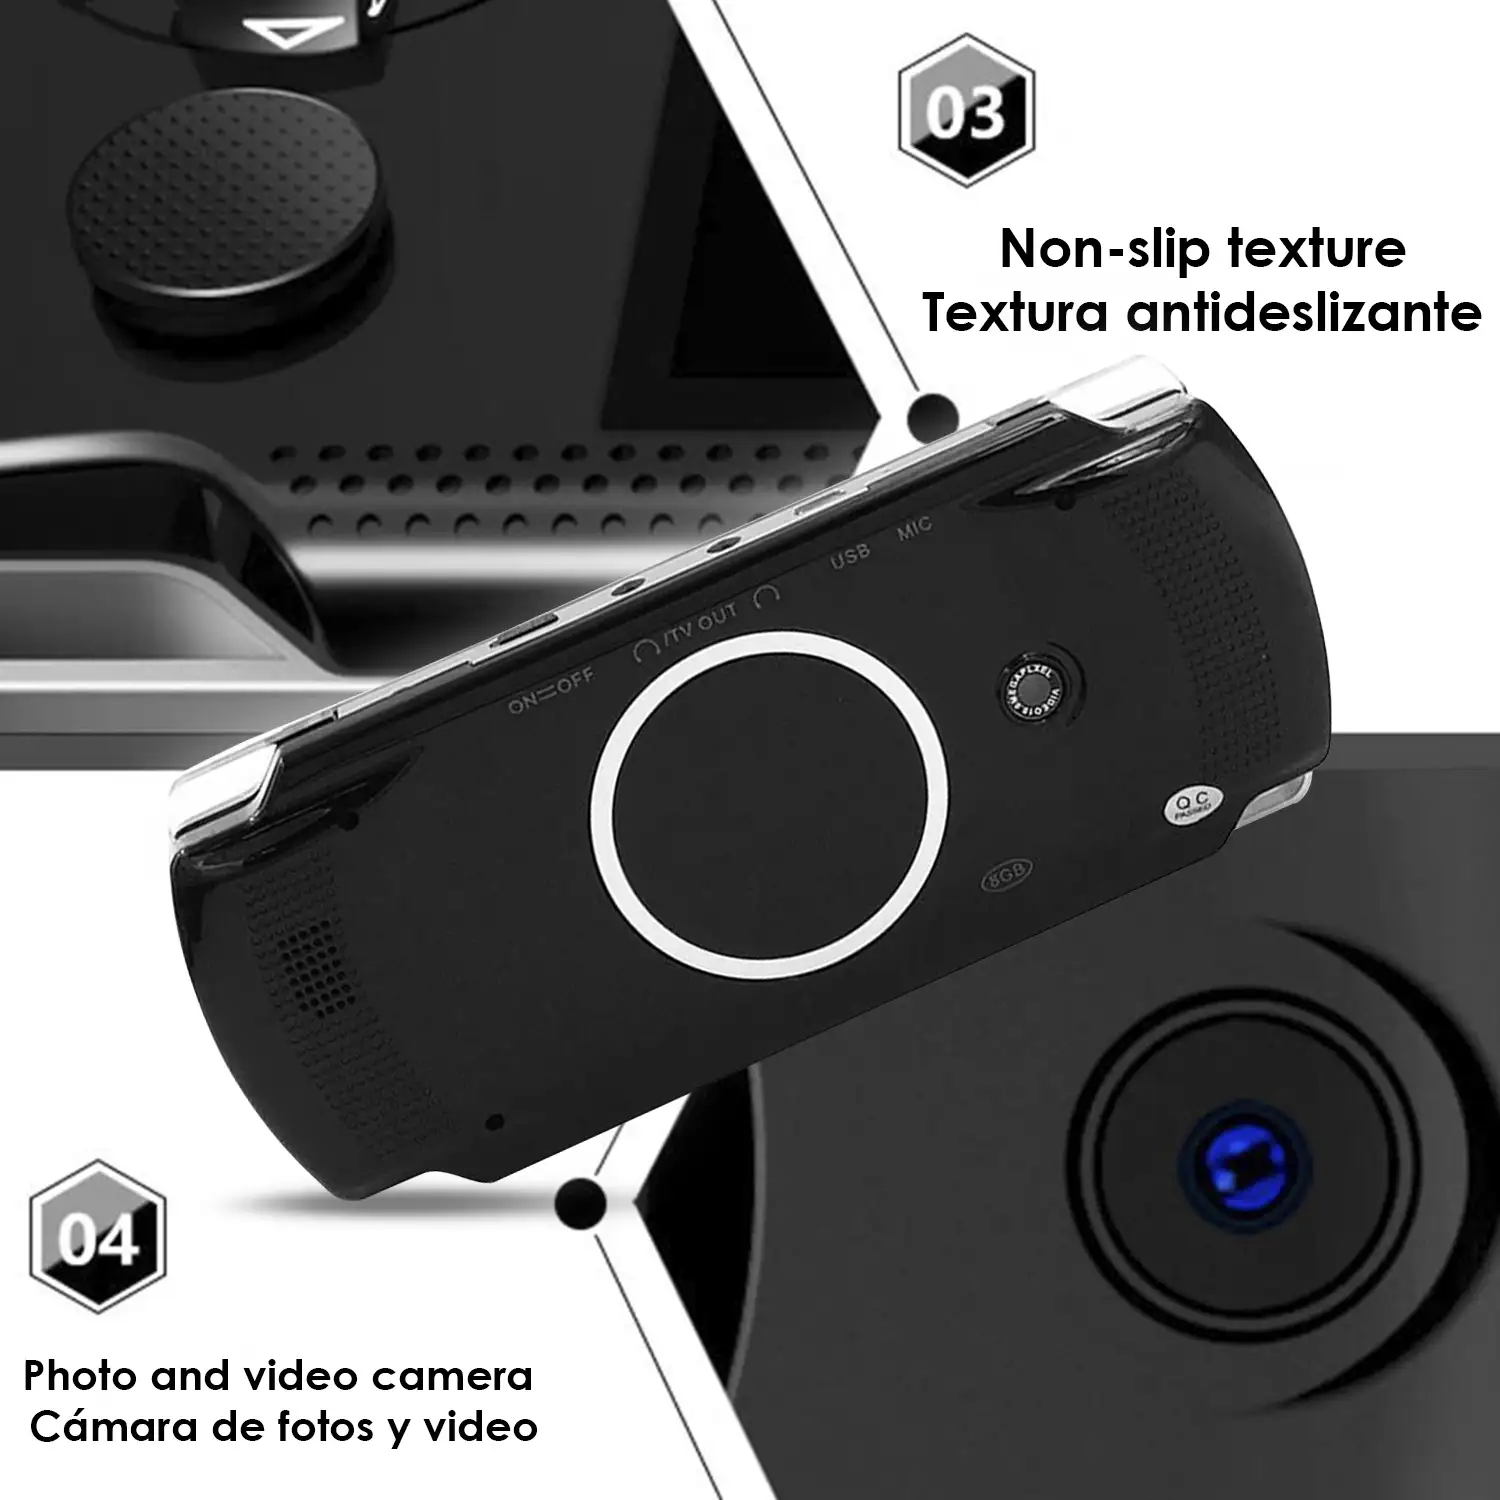 Consola de videojuegos X6 RS-01 con juegos clásicos preinstalados. Reproductor multimedia con cámara integrada.